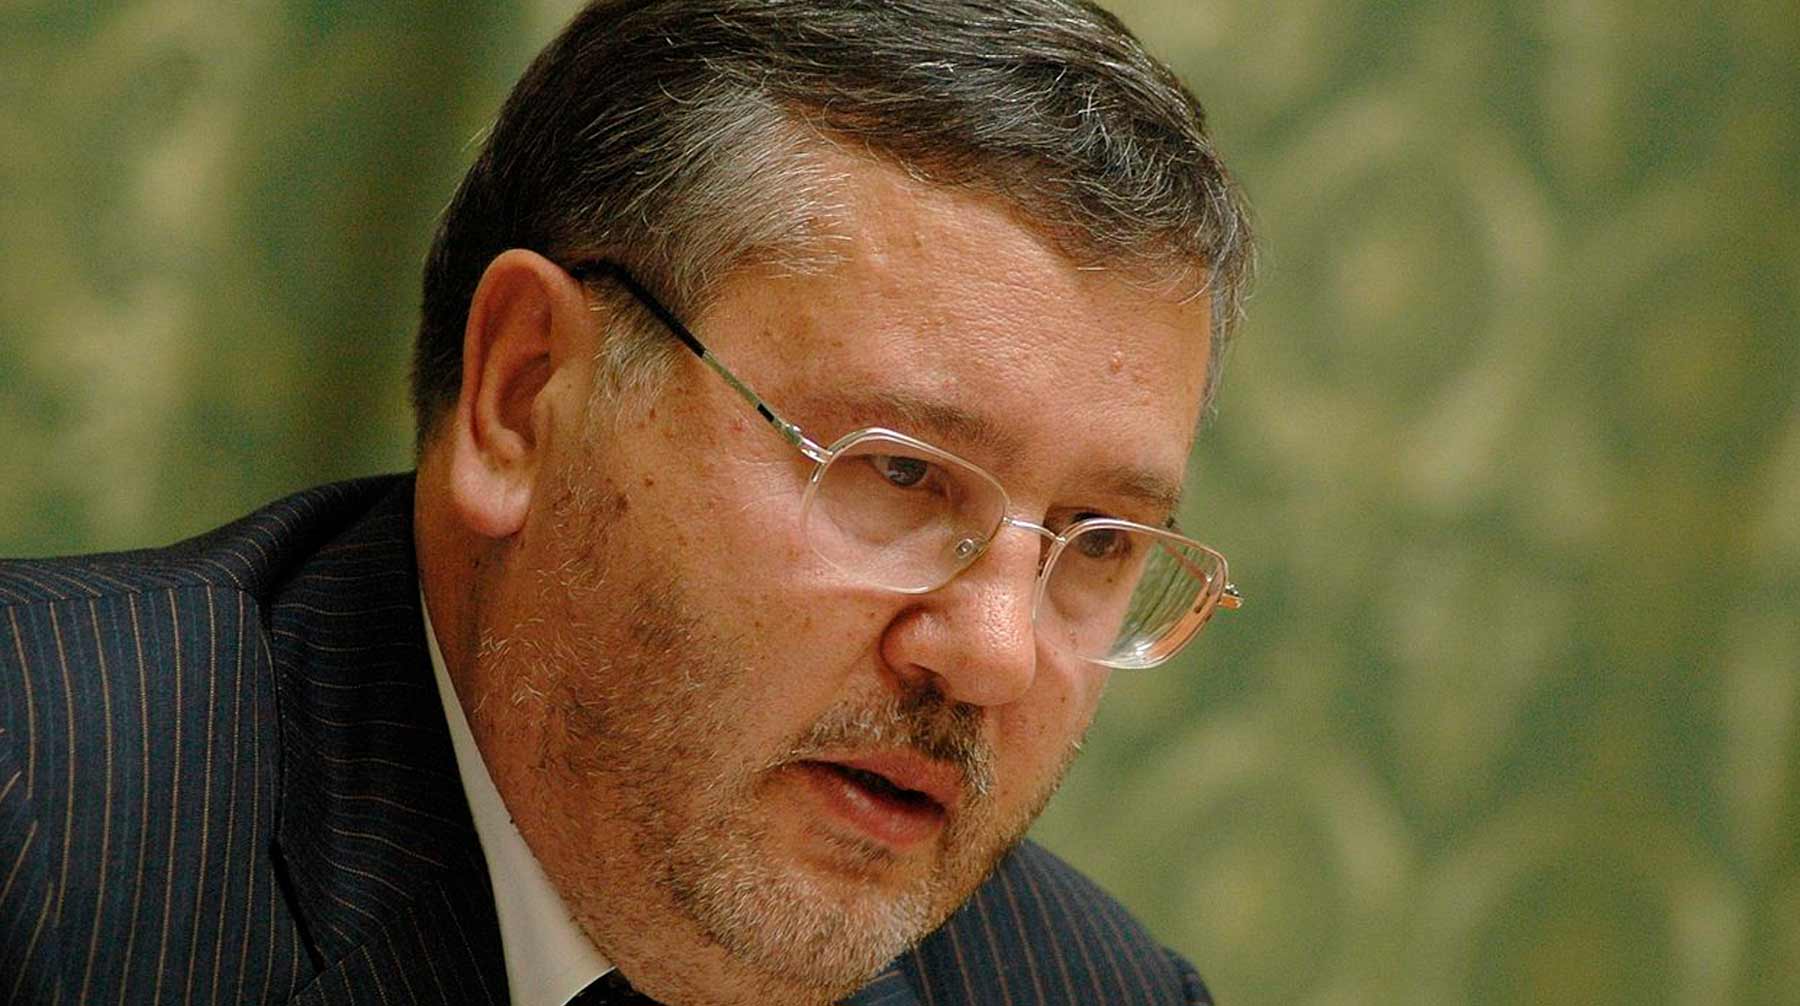 Анатолий Гриценко призывал «взрывать машины» в российских городах Анатолий Гриценко